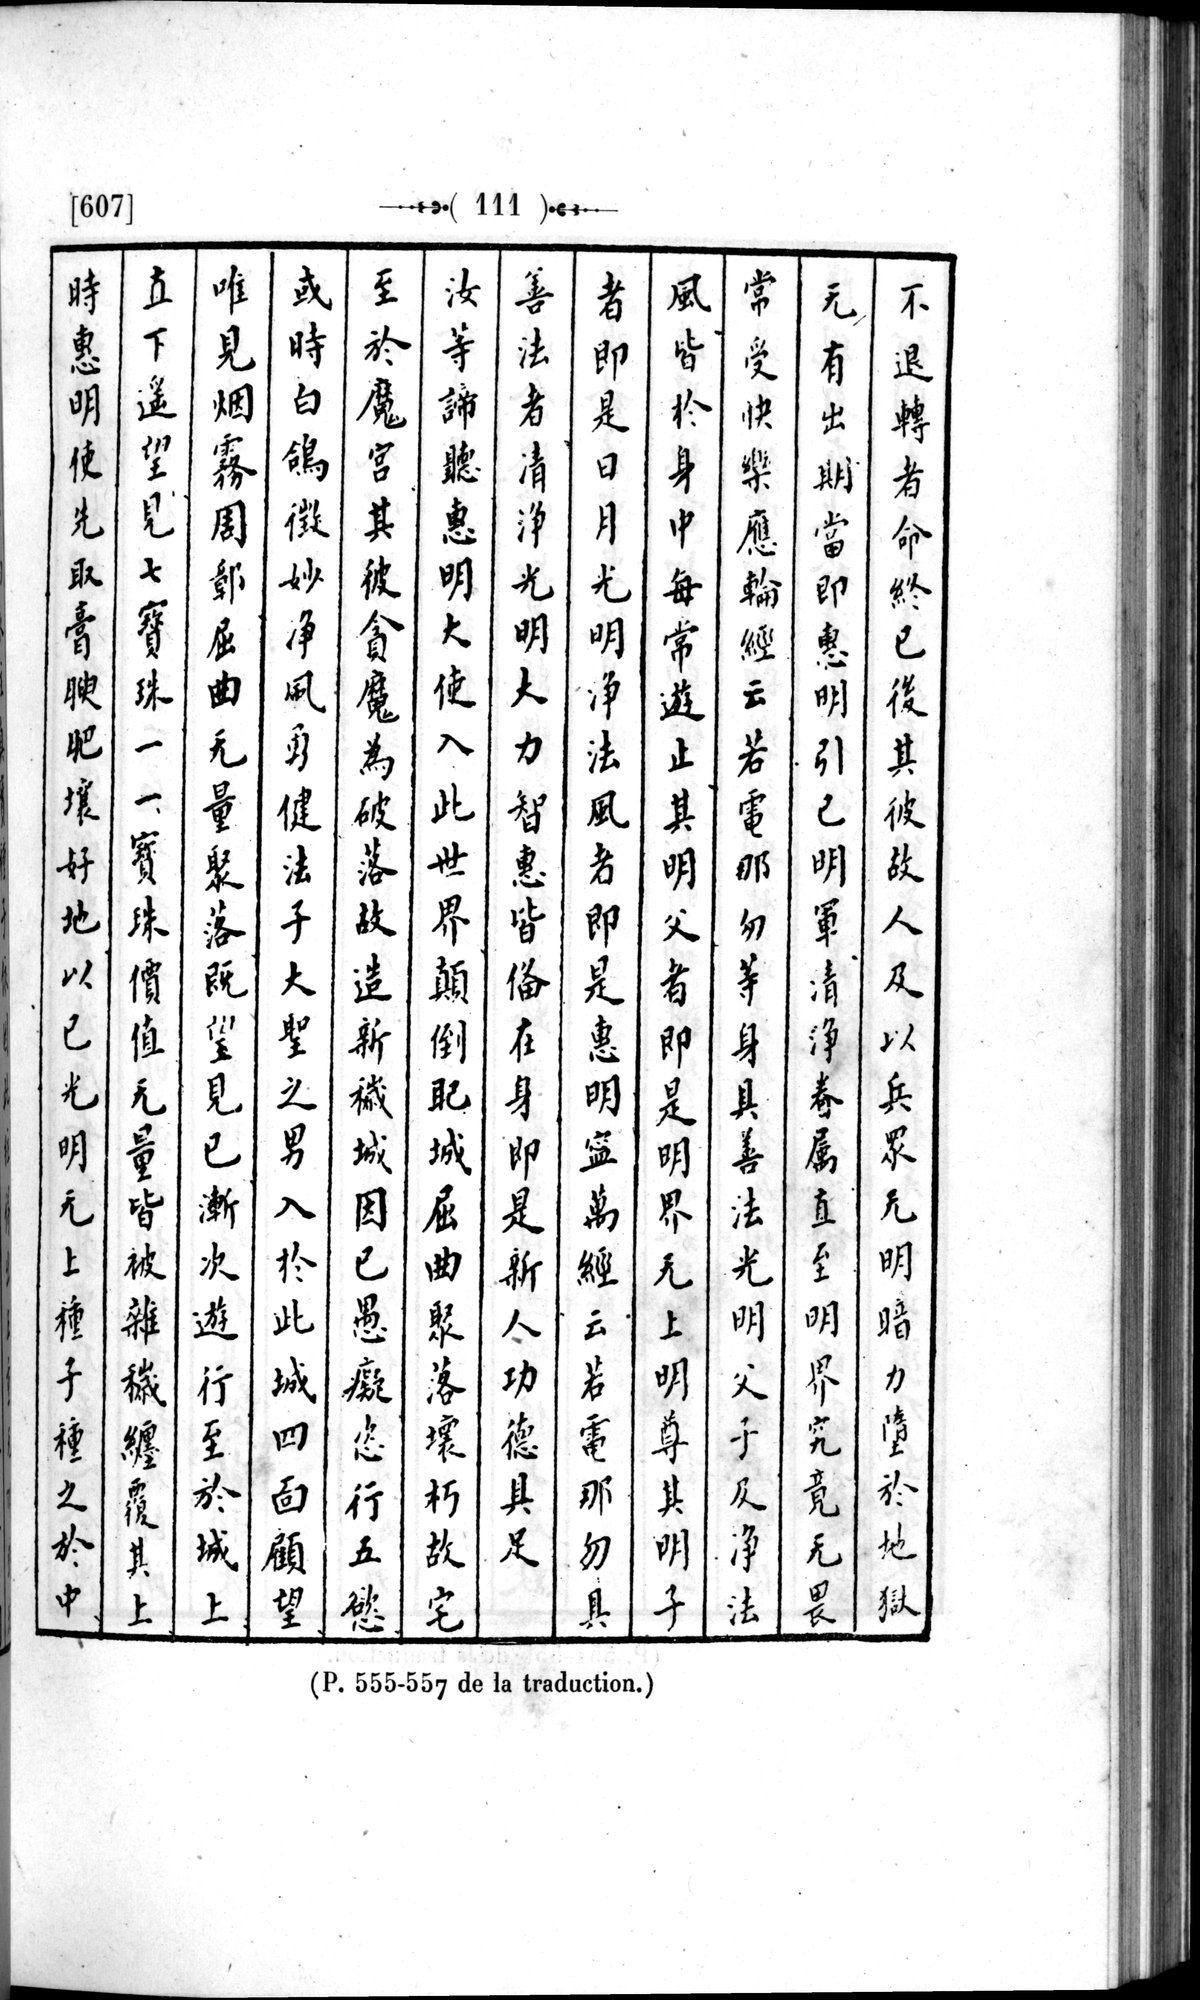 Un traité manichéen retrouvé en Chine : vol.1 / Page 121 (Grayscale High Resolution Image)